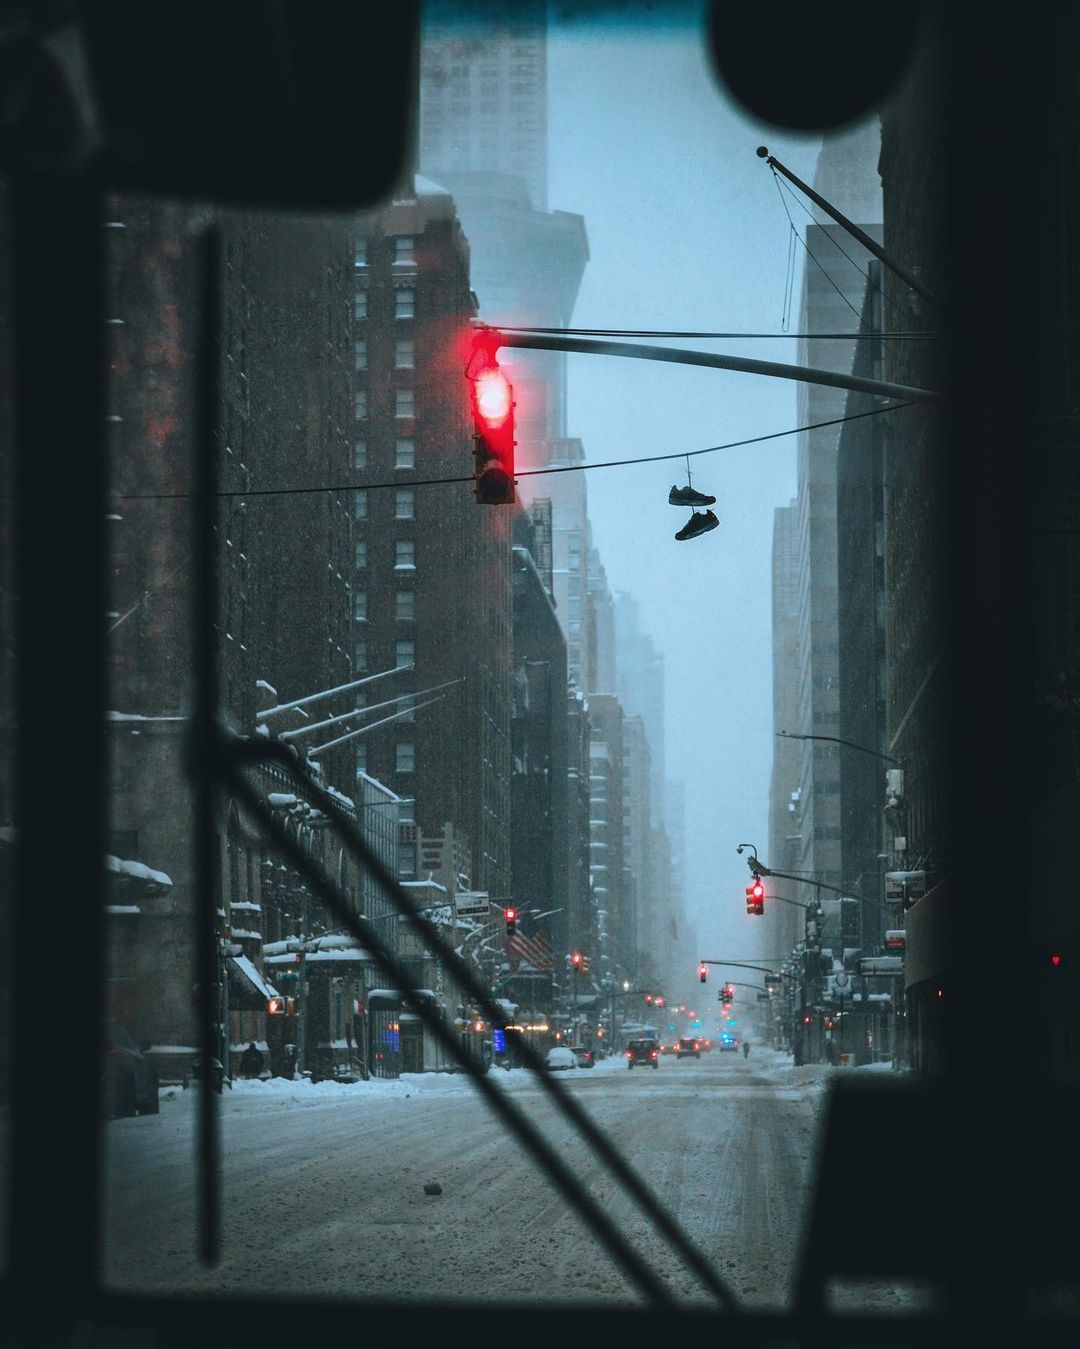 Атмосферные фотографии нью-йоркских улиц Джейсон, городской, НьюЙорка, Jason, талантливый, фотографсамоучка, исследователь, фокусируется, основном, уличной, фотографии, снимает, потрясающие, городские, пейзажи, улицах